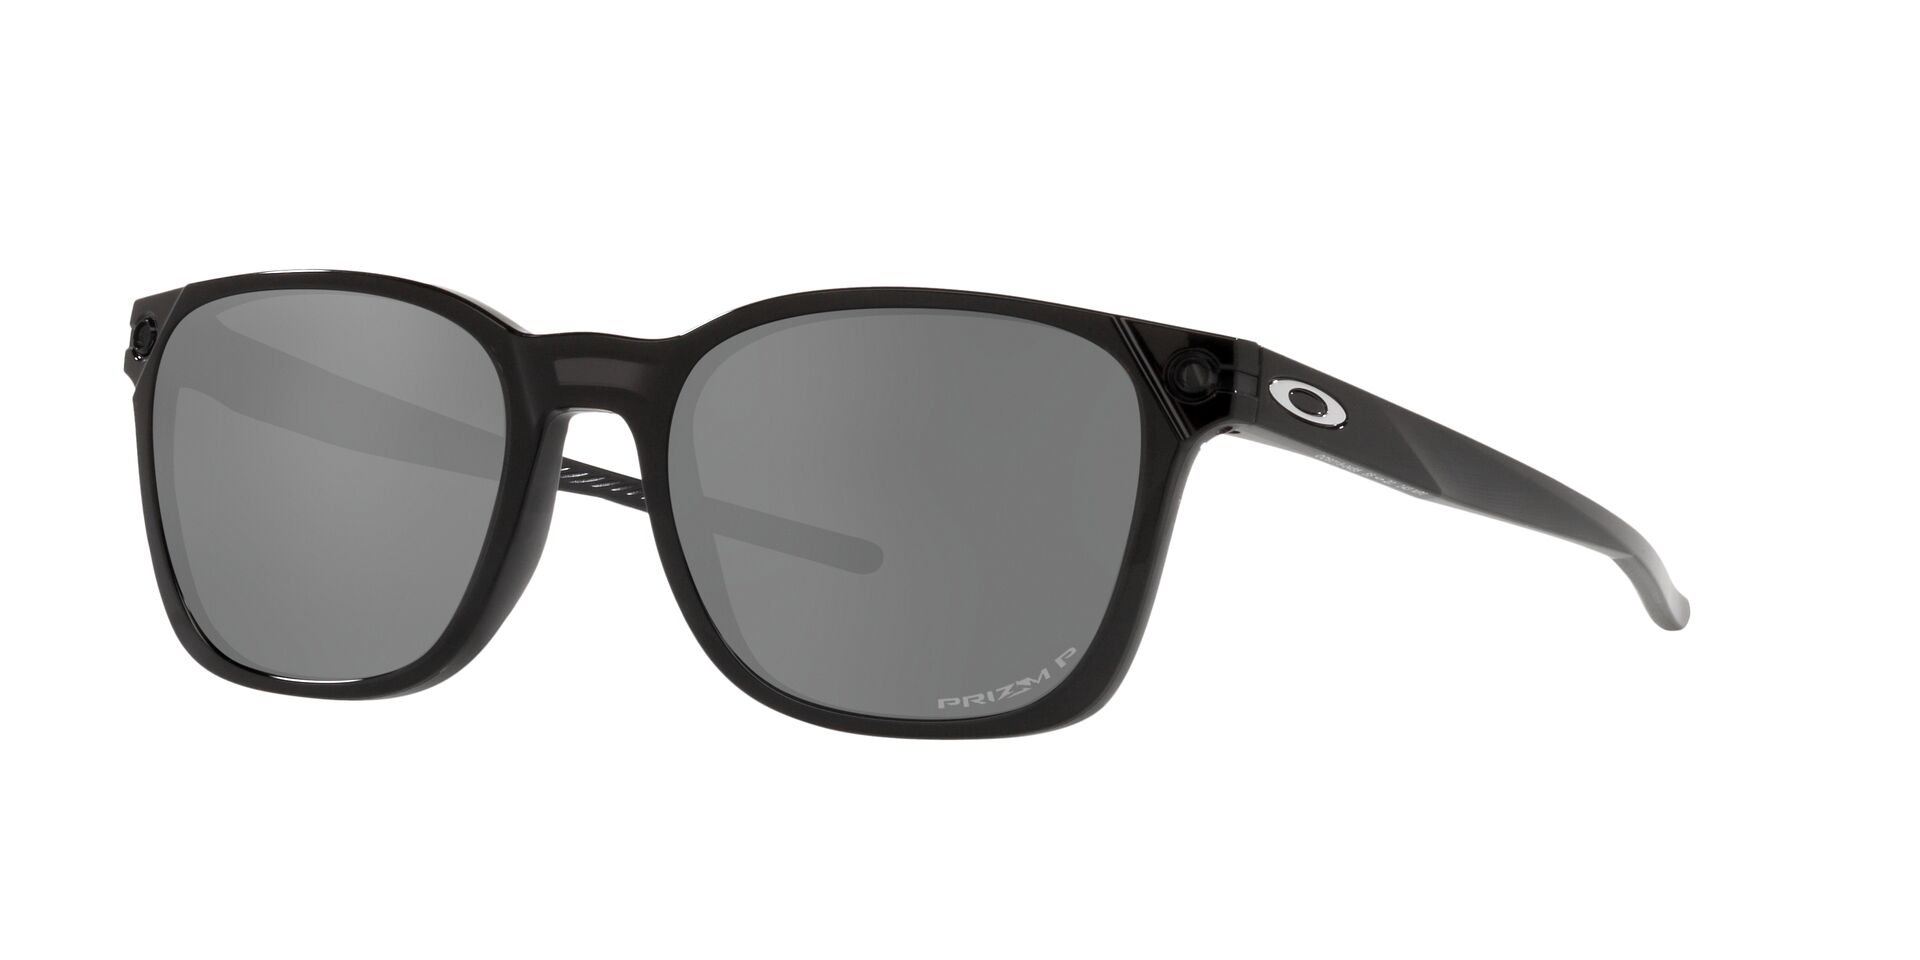 Das Bild zeigt die Sonnenbrille OO9018 901804 von der Marke Oakley in  schwarz.